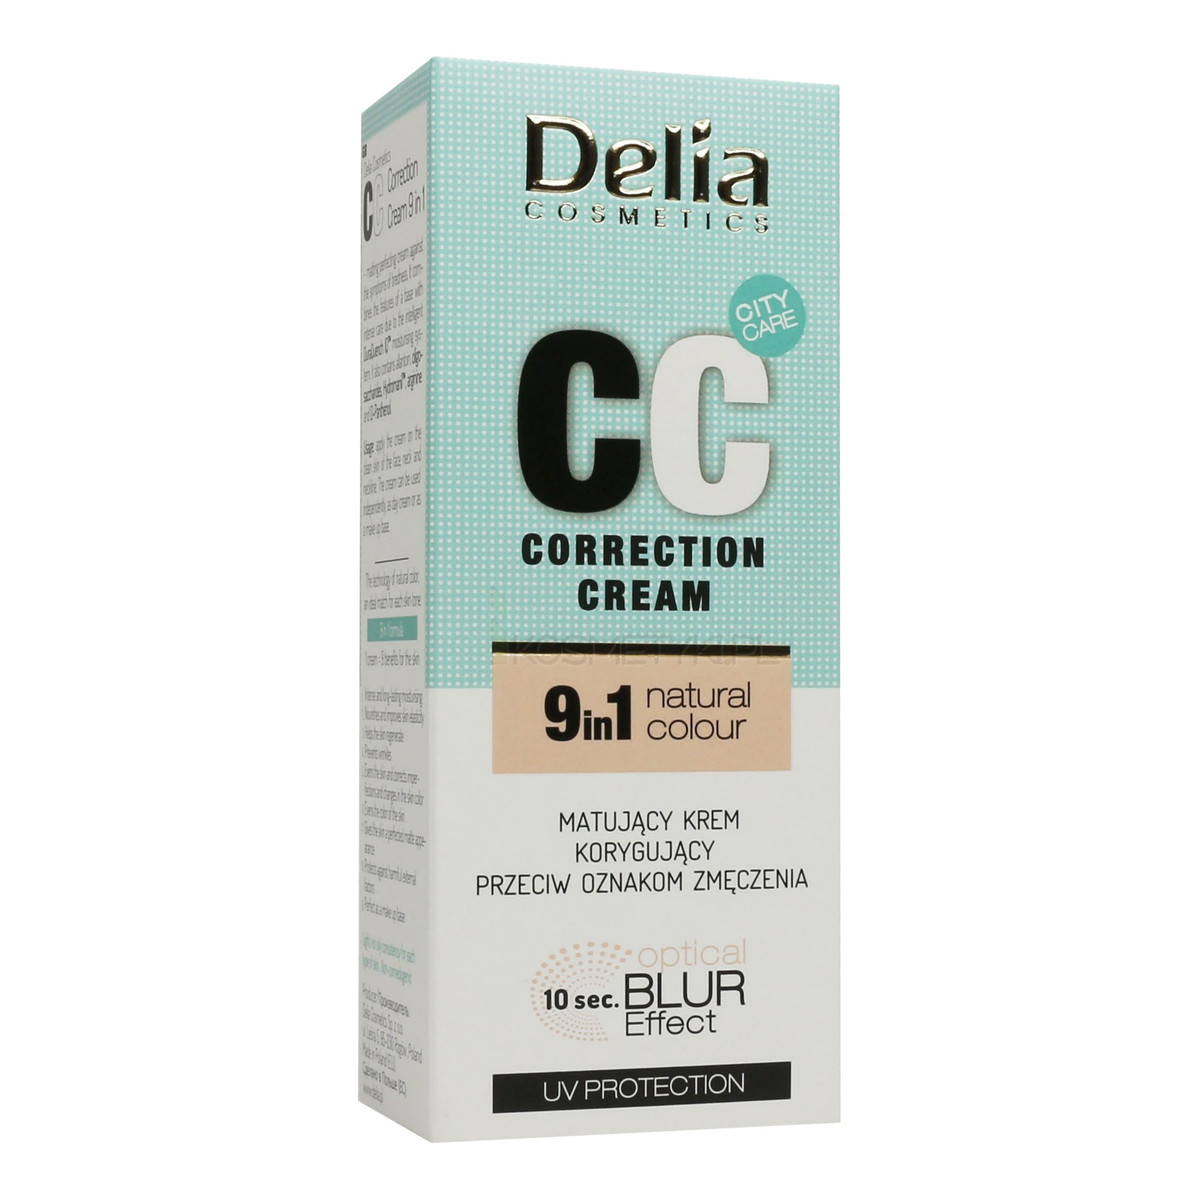 Delia Correction Cream 9 in 1 Natural Colour CC Matujący Krem Korygujacy Przeciw Oznakom Zmęczenia 30ml